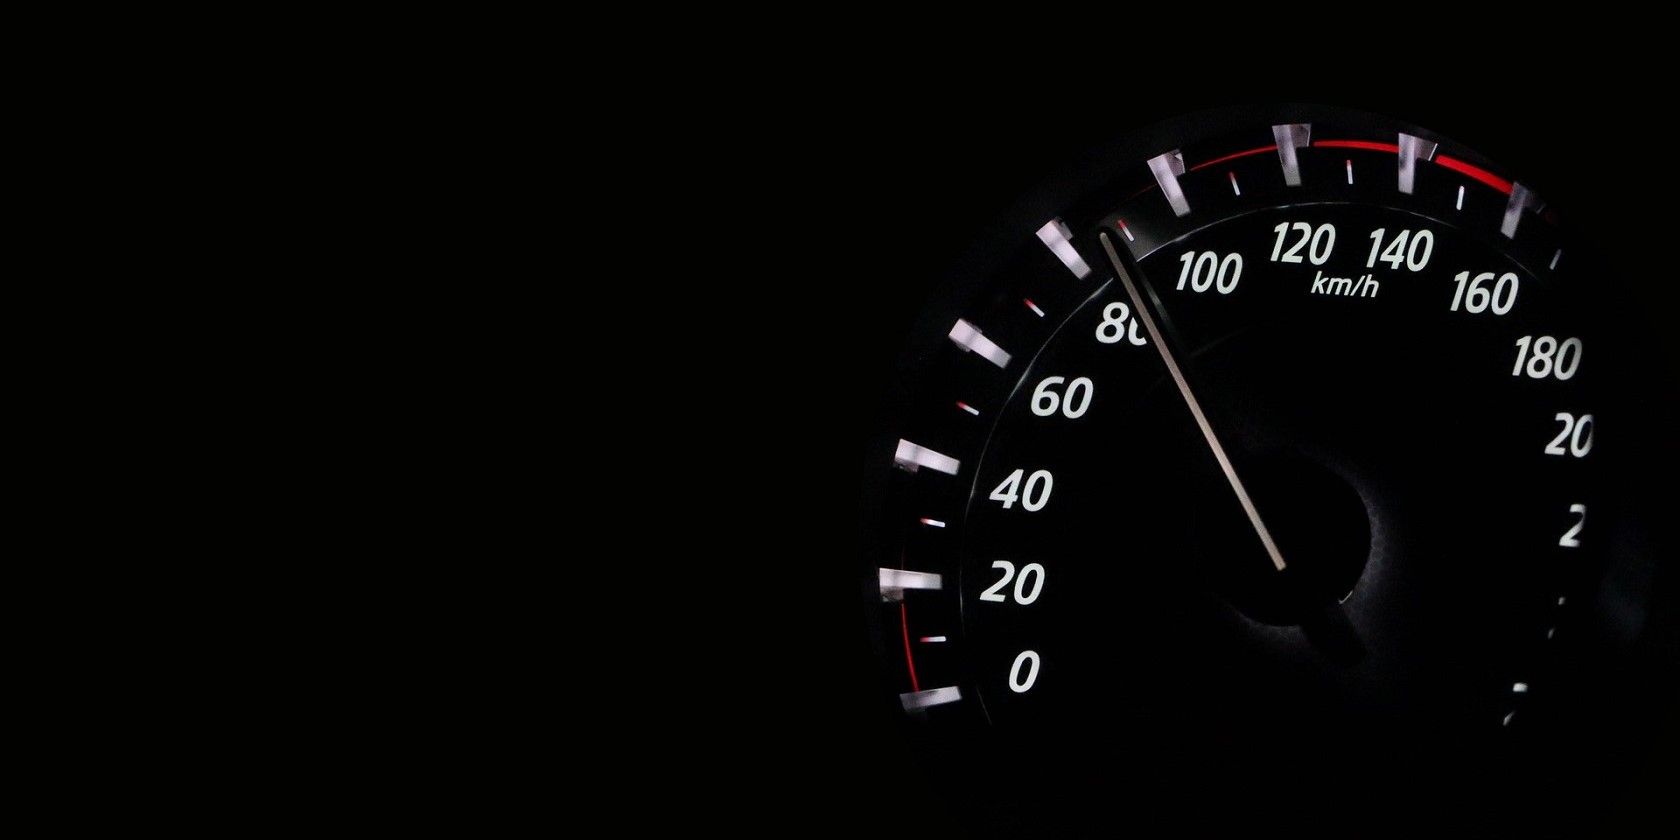 Car speedometer captured in low light